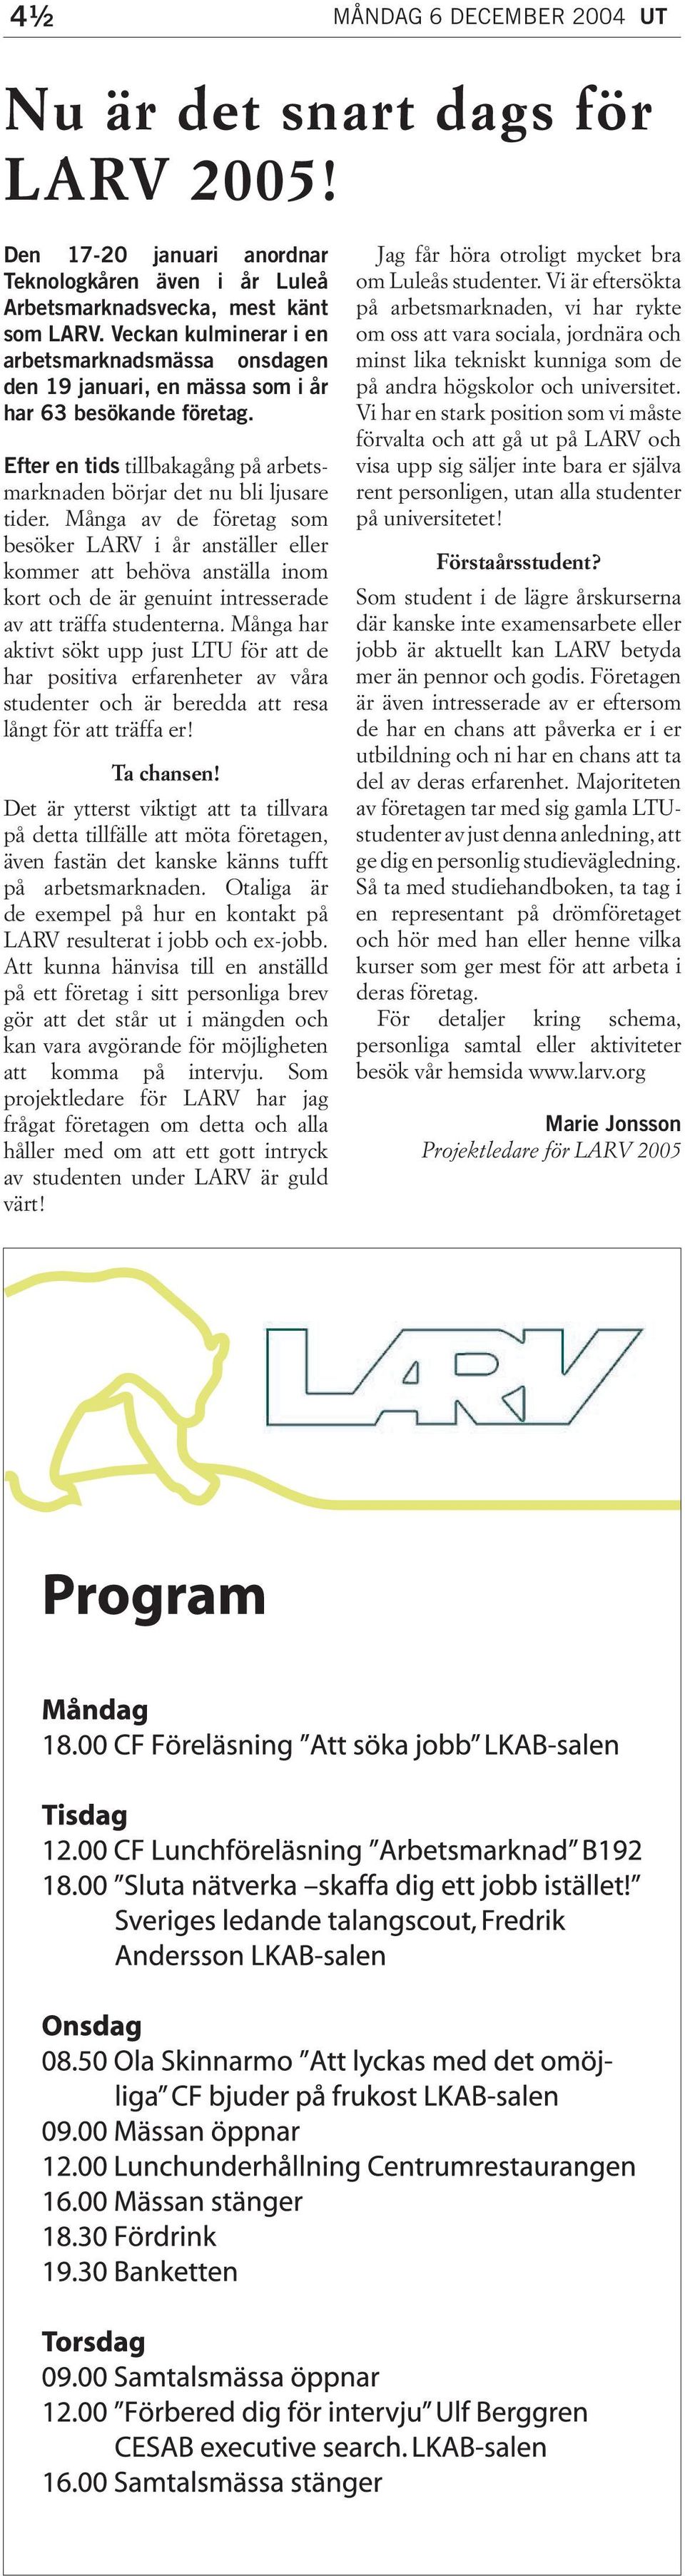 Många av de företag som besöker LARV i år anställer eller kommer att behöva anställa inom kort och de är genuint intresserade av att träffa studenterna.